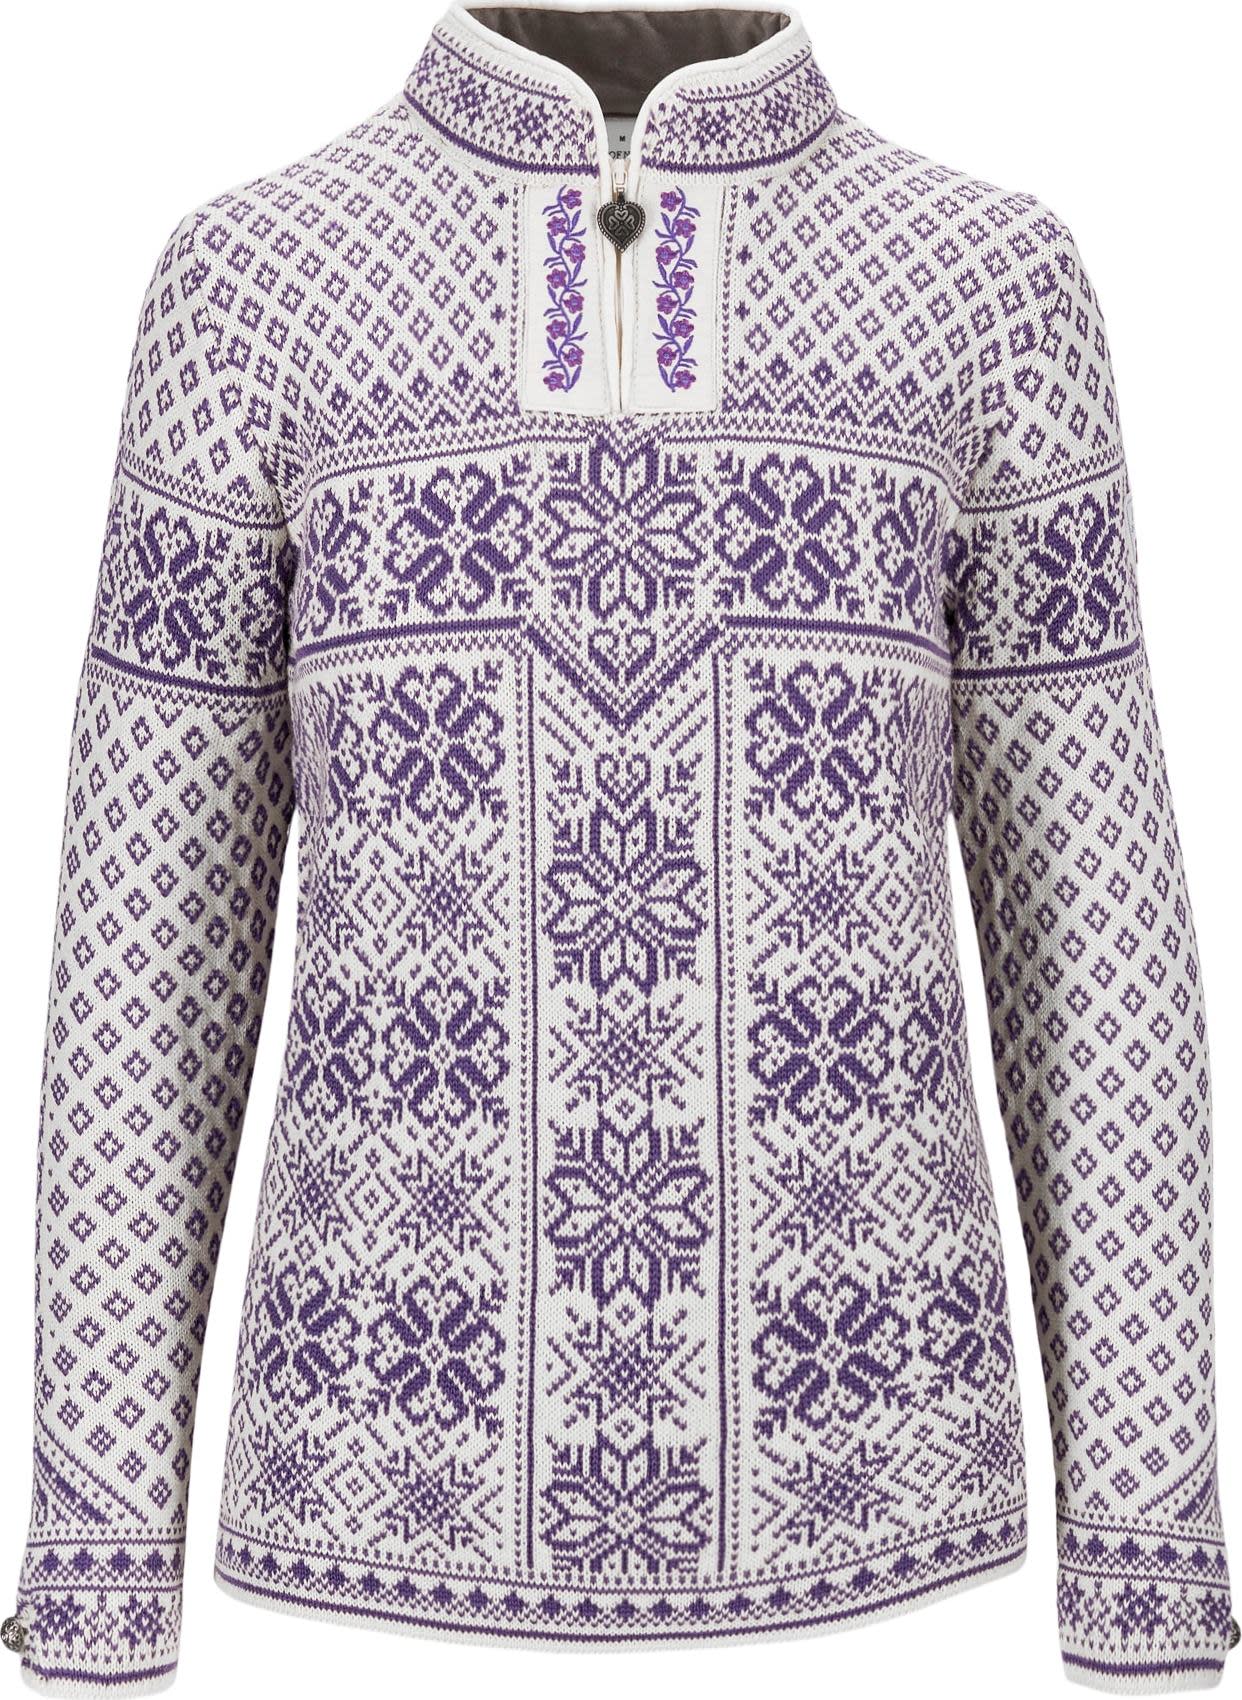 Women’s Peace Sweater Offwhite Darkpurple